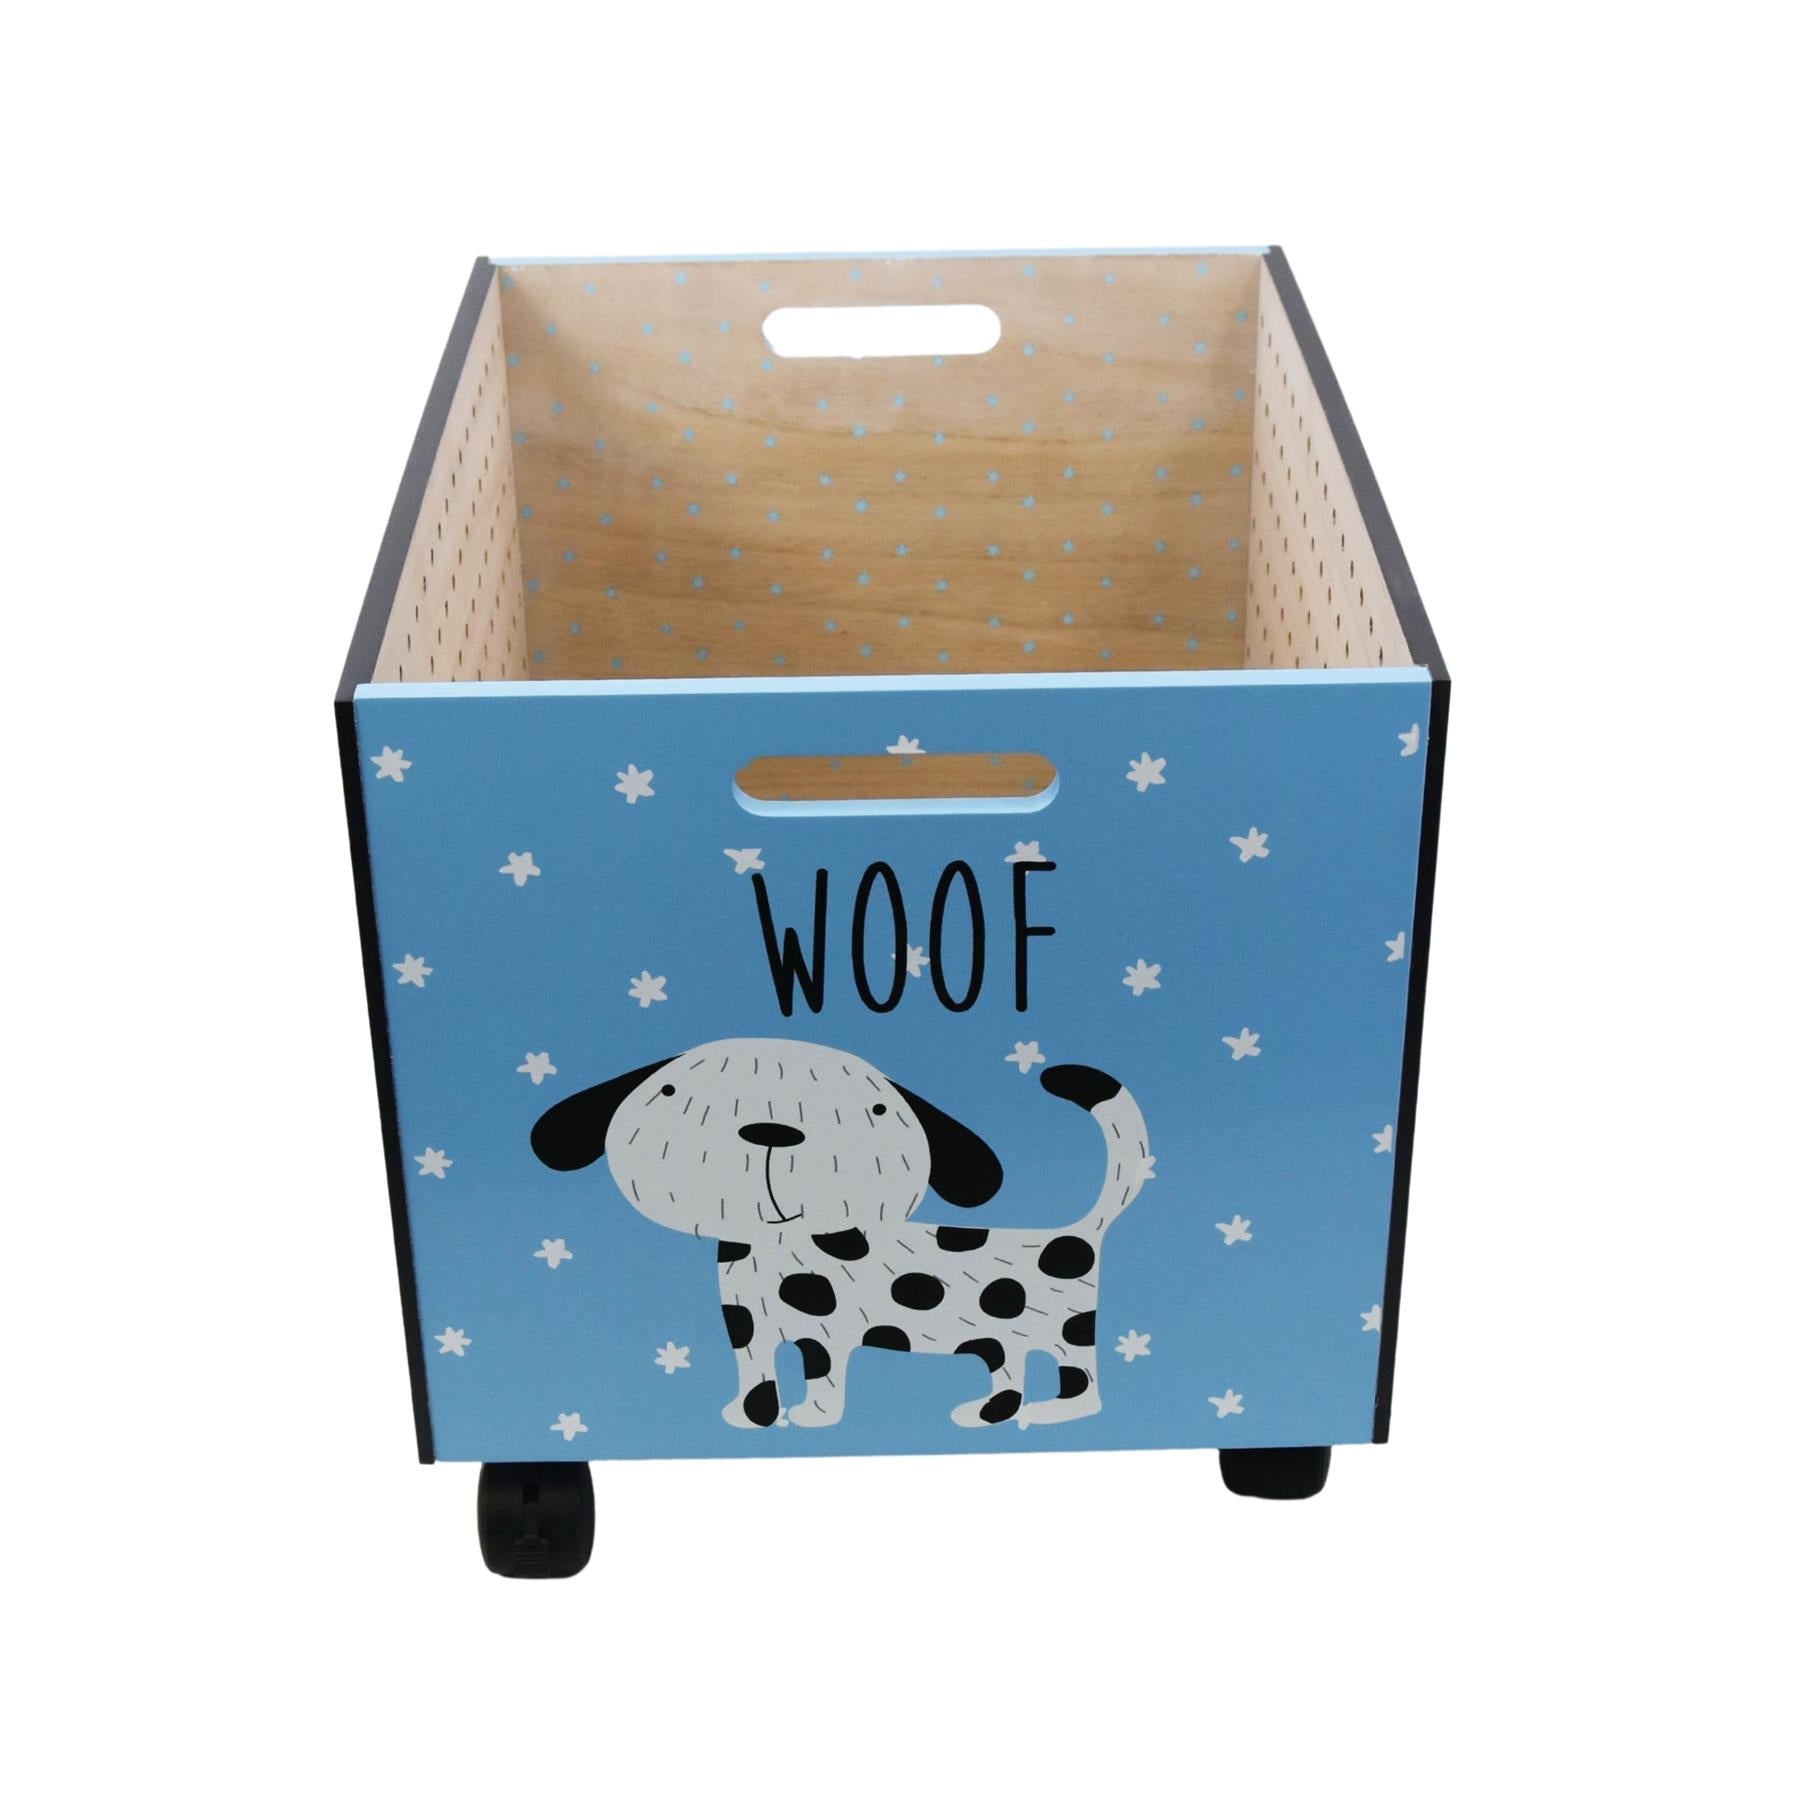 The Magic Toy Shop Kids Storage Box Kids Wooden Dog Design Storage Chest On Wheels